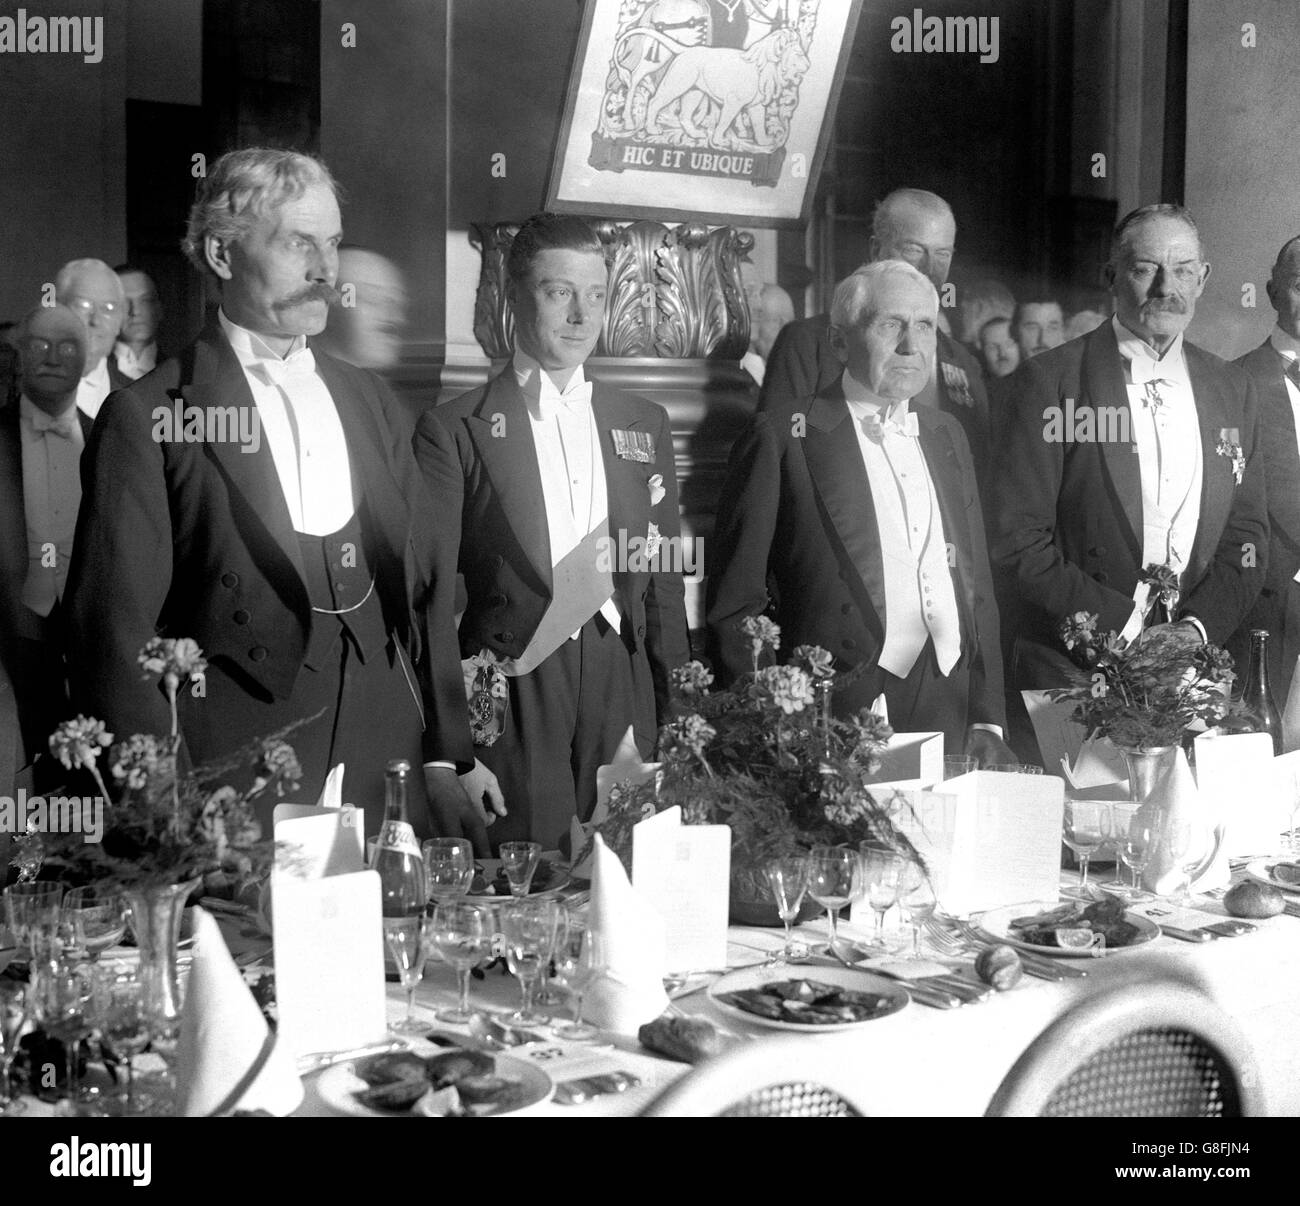 Le Prince de Galles (2e à gauche) et le Premier ministre Ramsay MacDonald (tout à gauche) lors d'un dîner donné par le club des pèlerins à l'hôtel Victoria.Parmi les invités du Club figuraient M. Kellog, le nouvel ambassadeur américain, et Sir Esme Howard, le nouvel ambassadeur britannique aux États-Unis. Banque D'Images